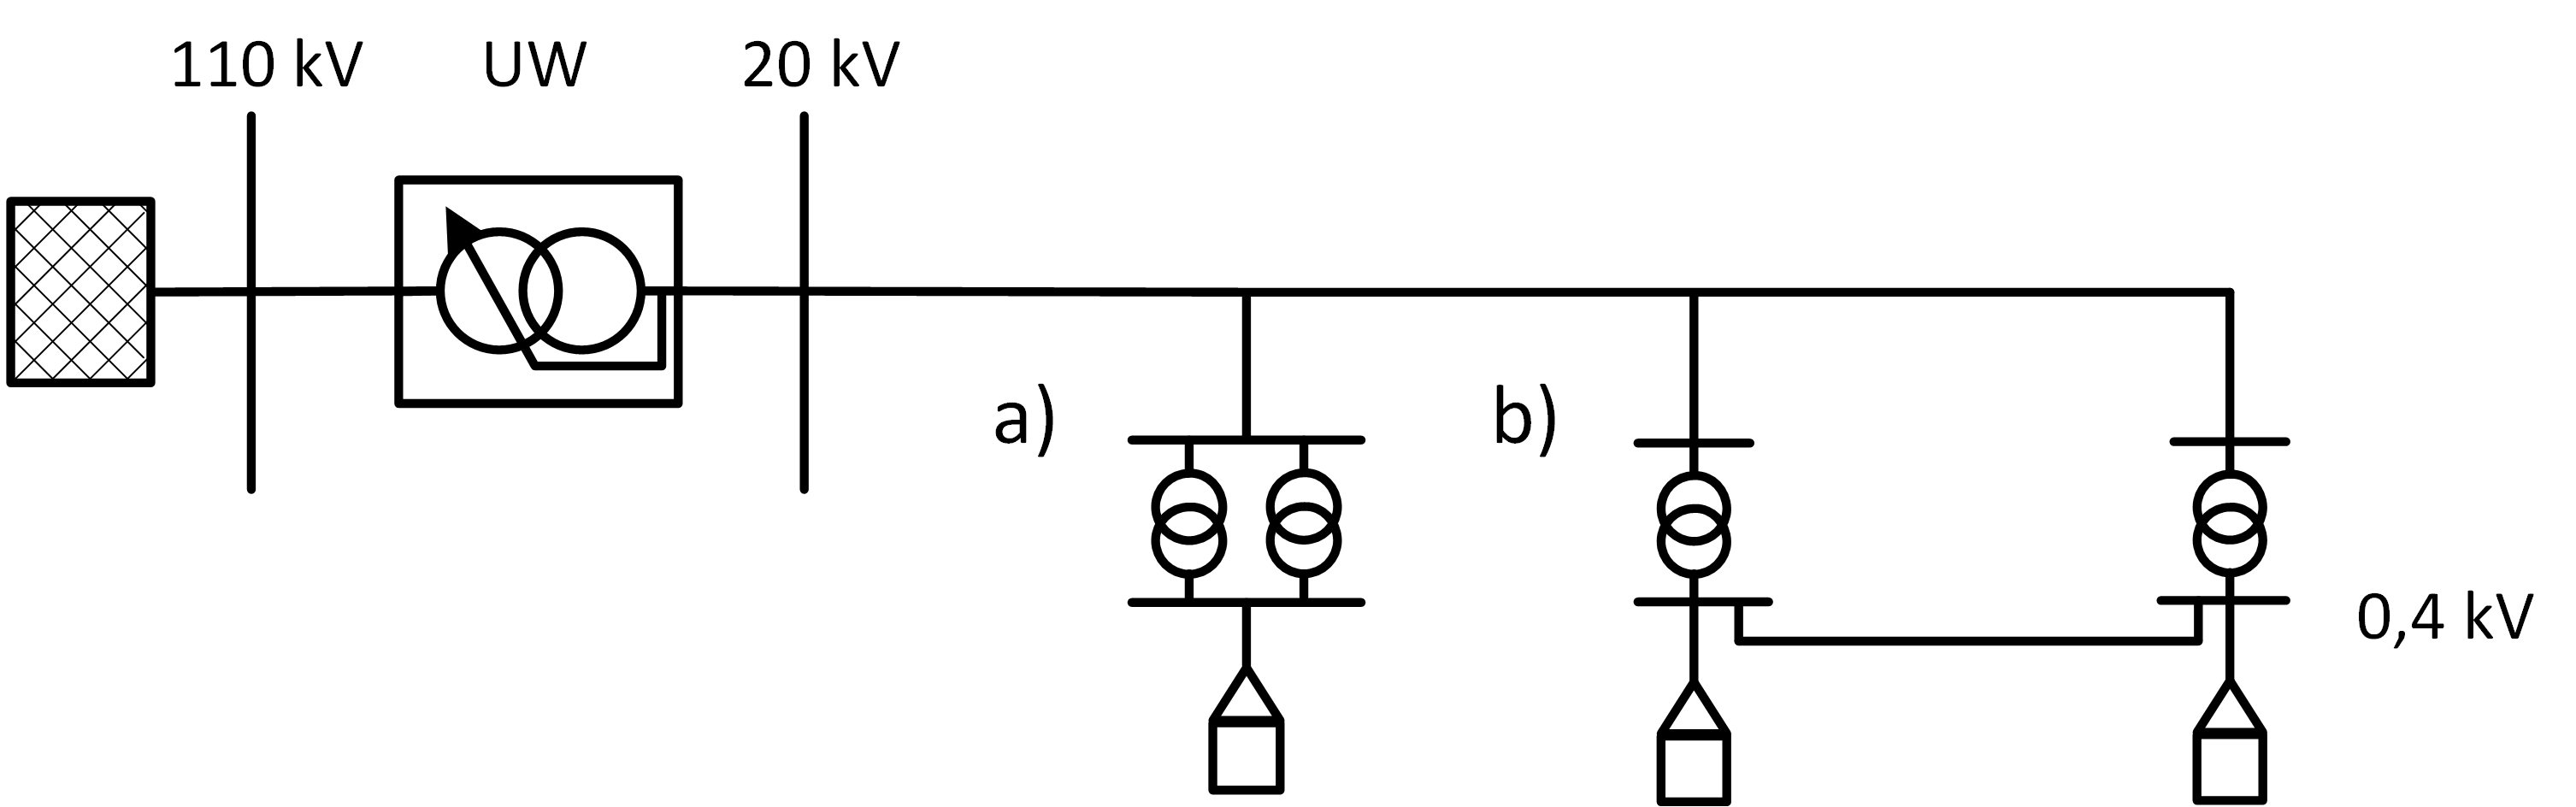 Parallel_Abb1_Paralleldarstellung des a) Sammelschienen-Parallelbetriebs und des b) Netzparallelbetriebs von Transformatoren im Verteilungsnetzt